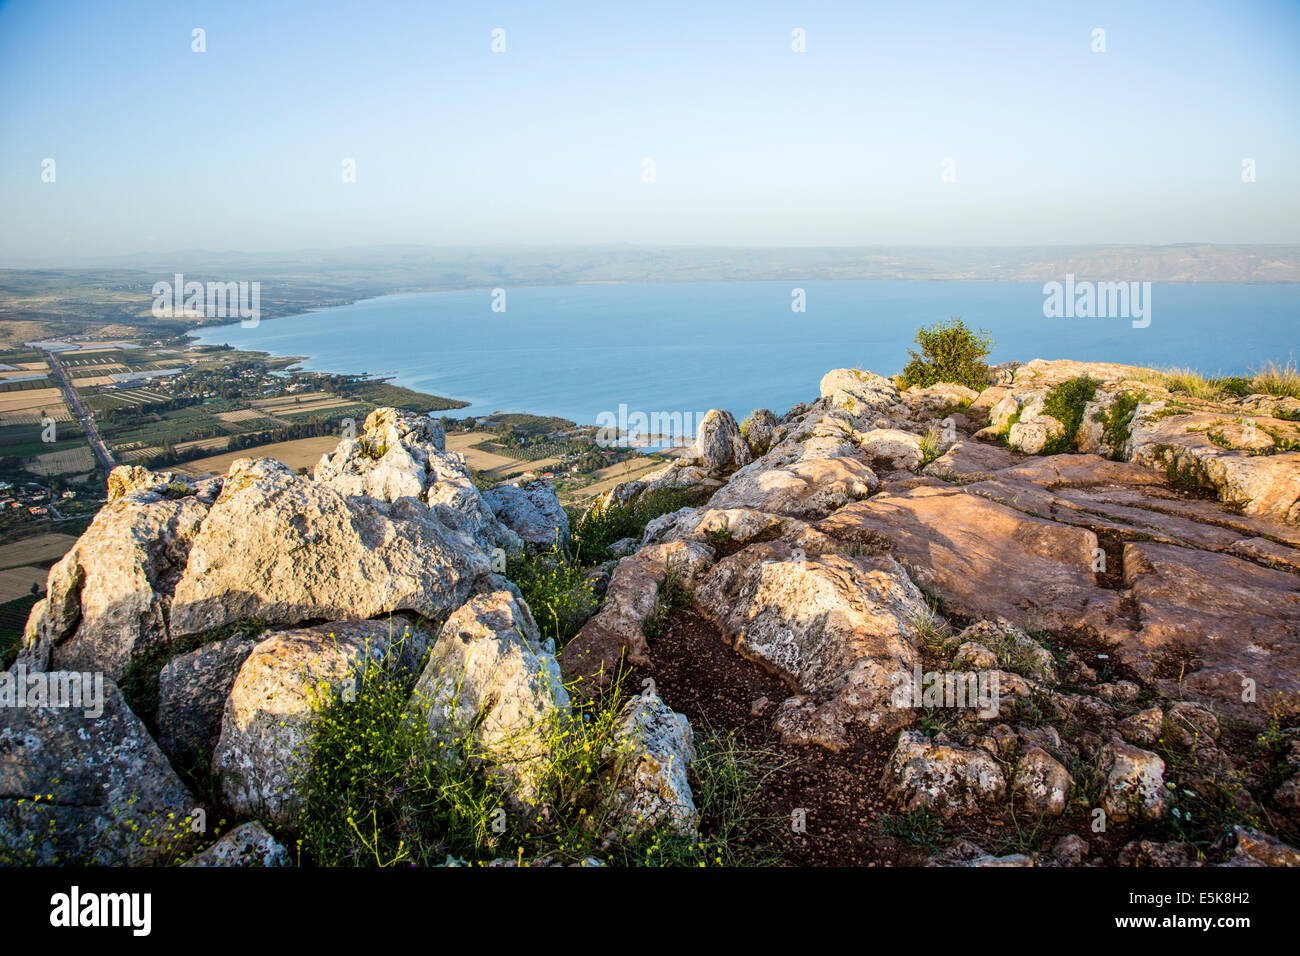 Israel, la Baja Galilea, el Mar de Galilea, como se ve desde la montaña Arbel Foto de stock